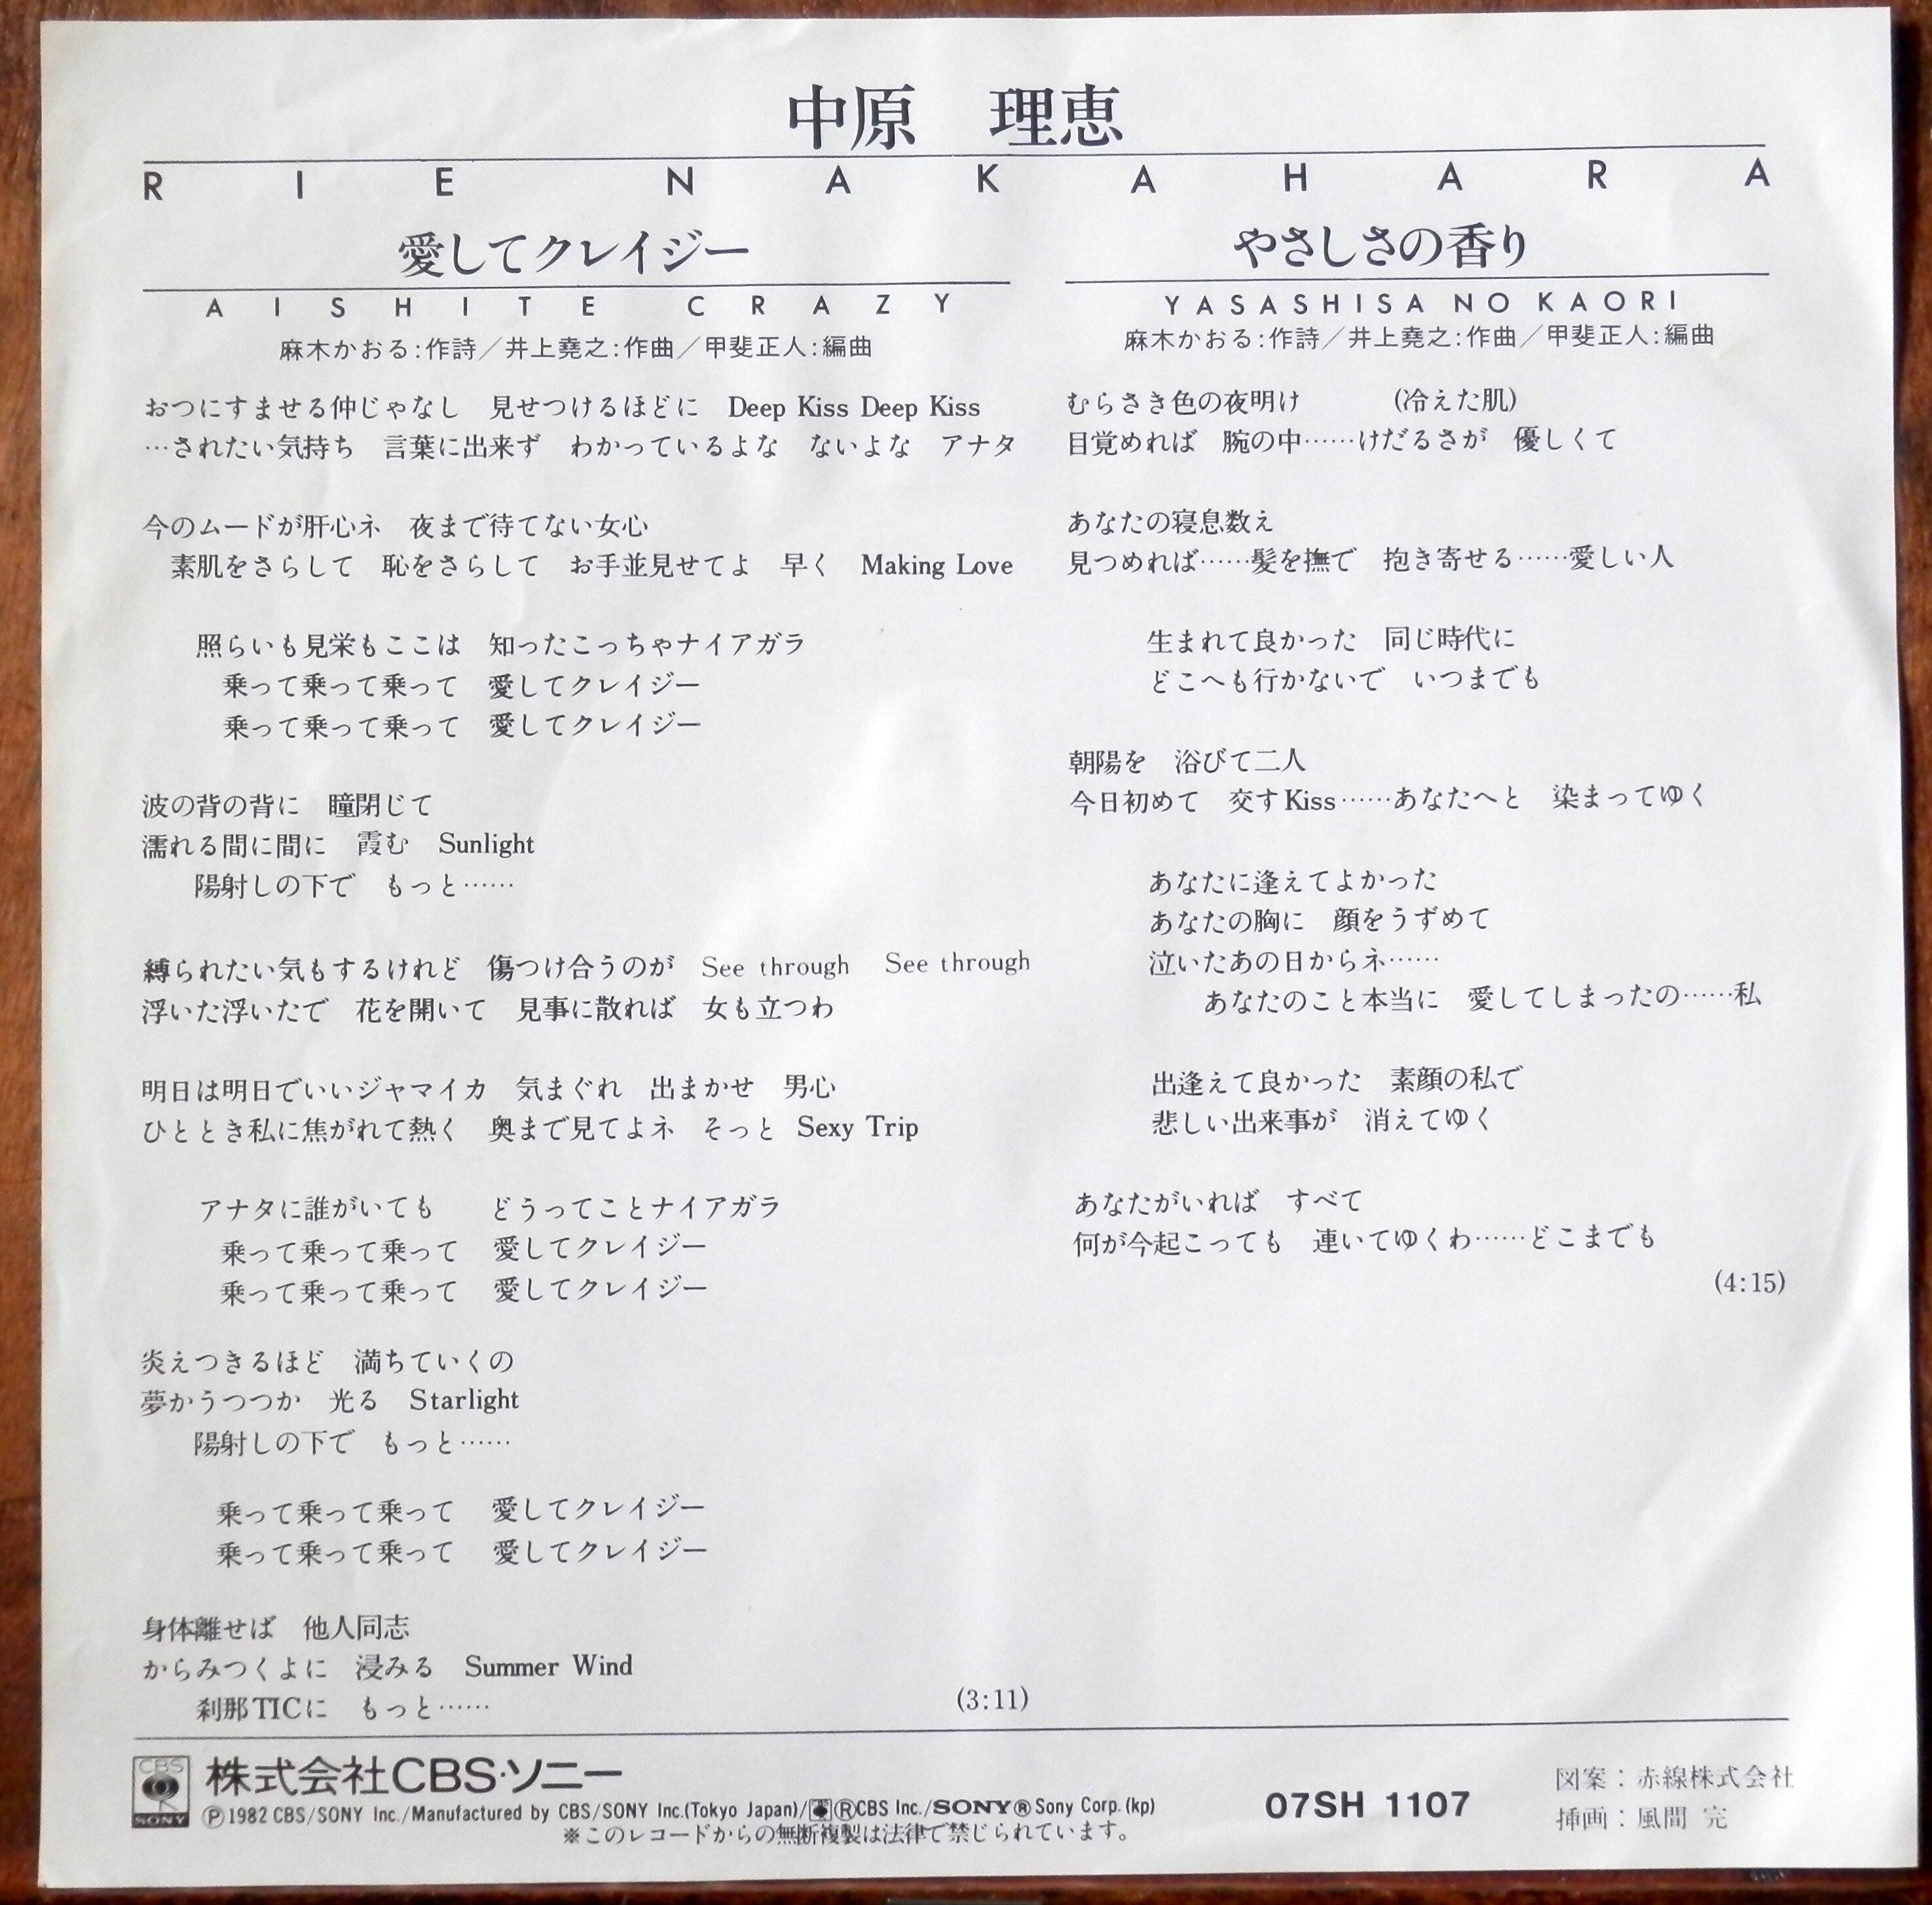 82【EP】中原理恵 愛してクレイジー *井上堯之・曲 音盤窟レコード